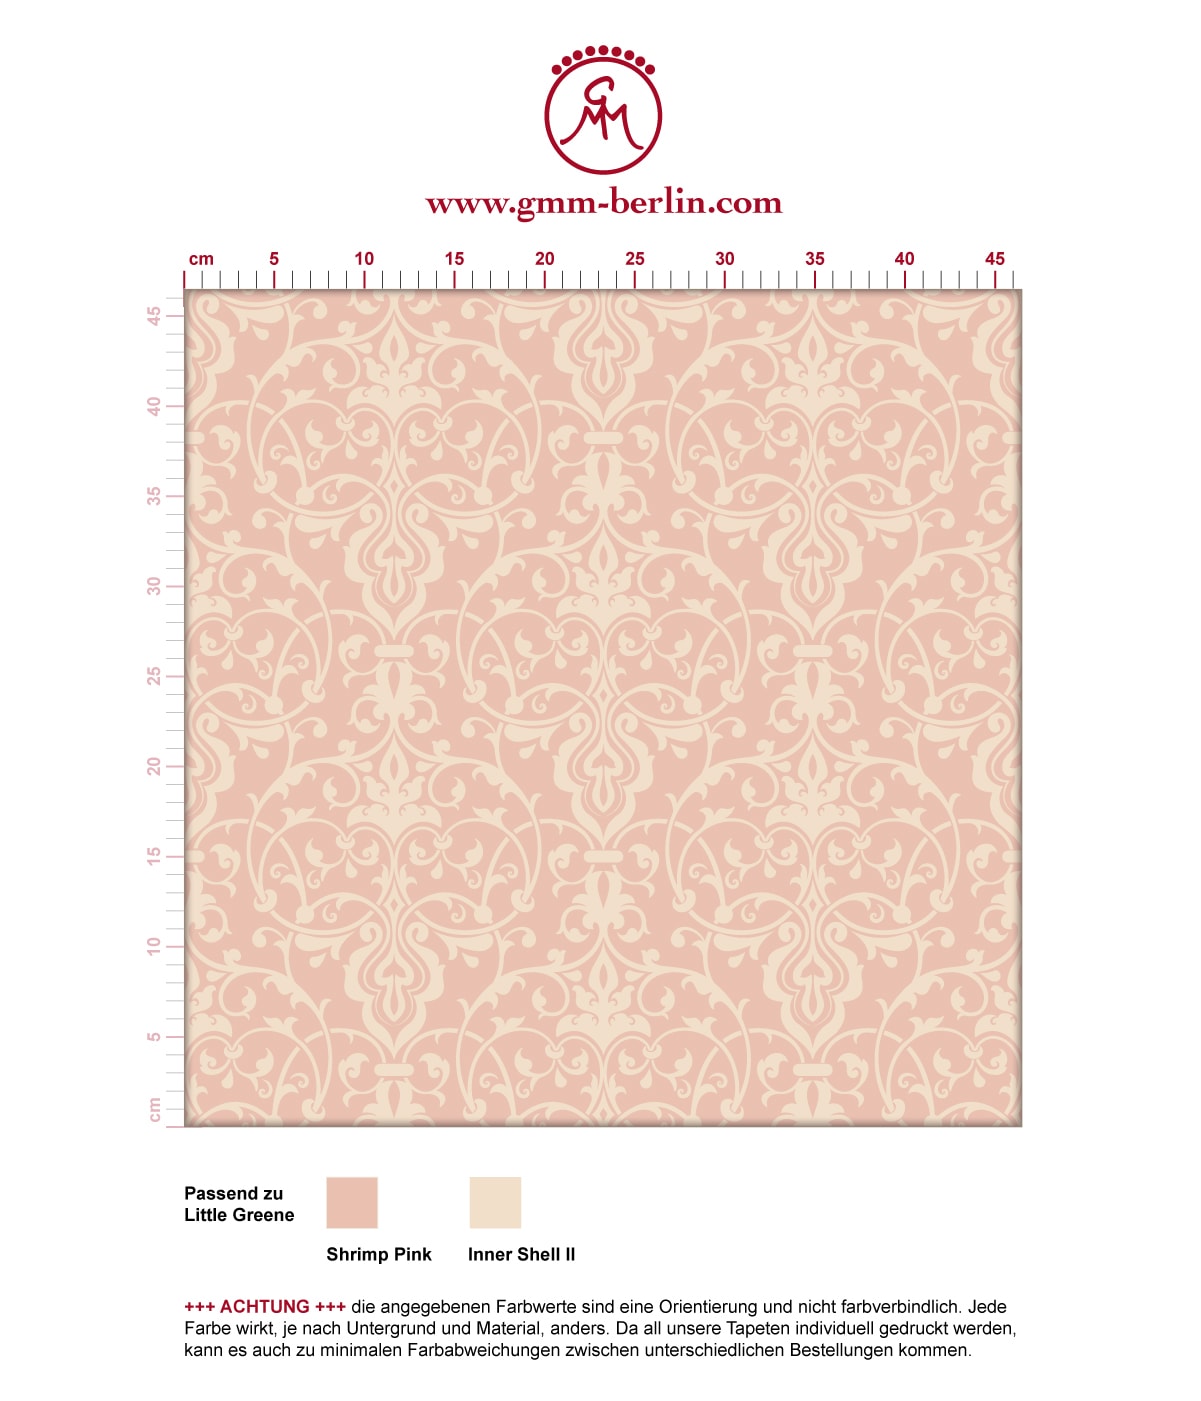 Ornamentale Tapete mit klassischem Damast Muster auf rosa angepasst an Little Greene Wandfarben. Aus dem GMM-BERLIN.com Sortiment: Schöne Tapeten in der Farbe: rosa